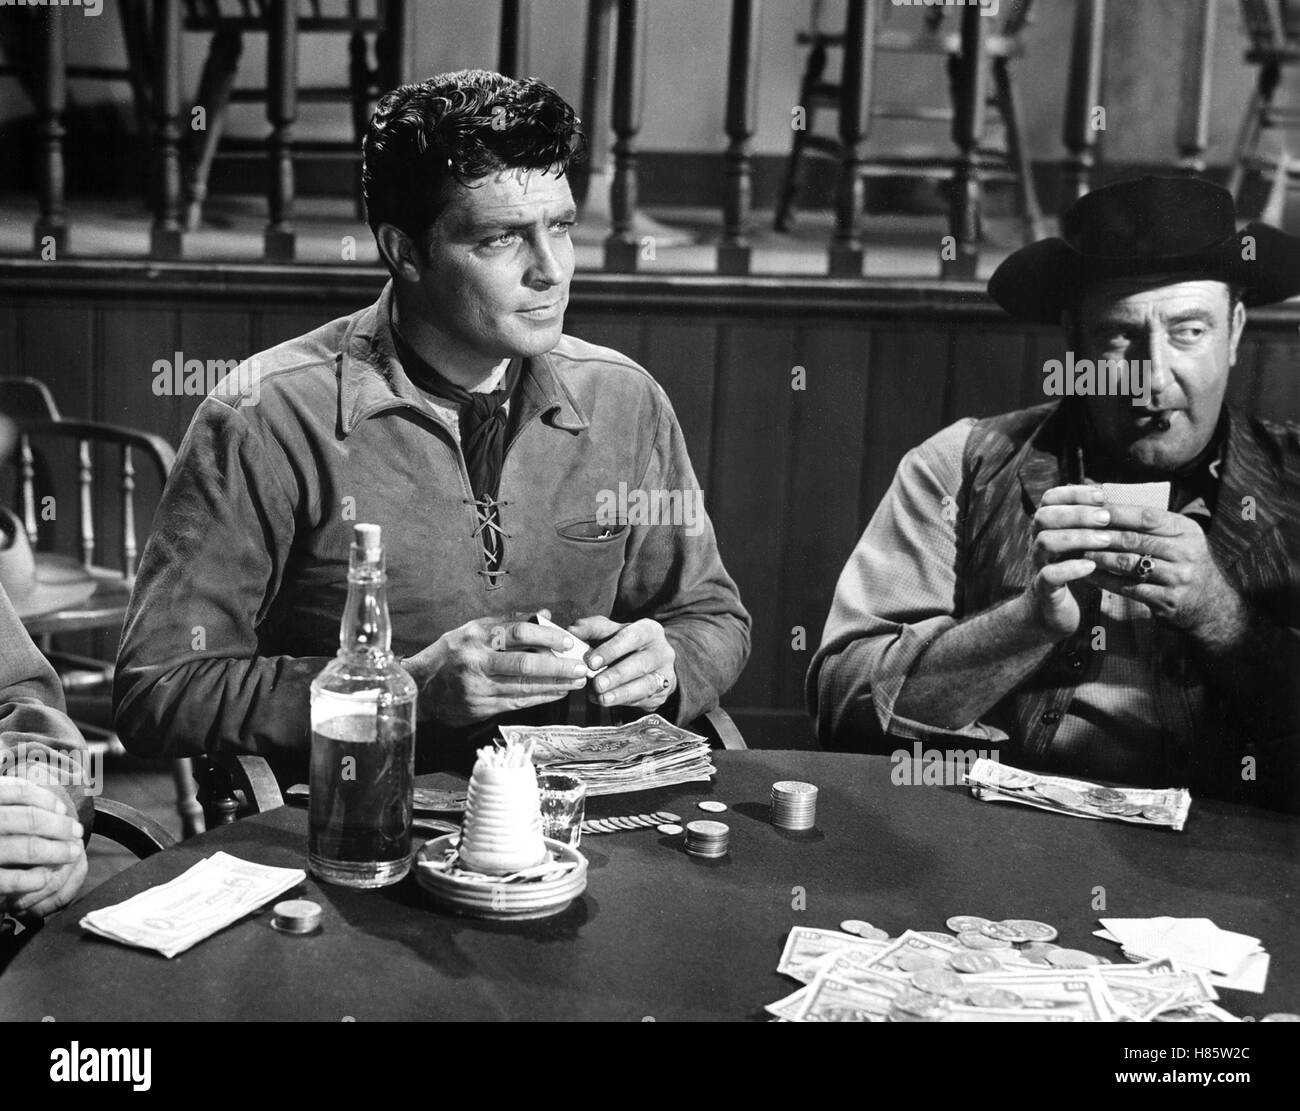 Stunden des Terrors, ( A DAY OF FURY) USA 1956, Regie: Harmon Jones, DALE ROBERTSON, Key: Spieler, Kartenspieler, Zocker, Geldscheine, Whisky Stock Photo